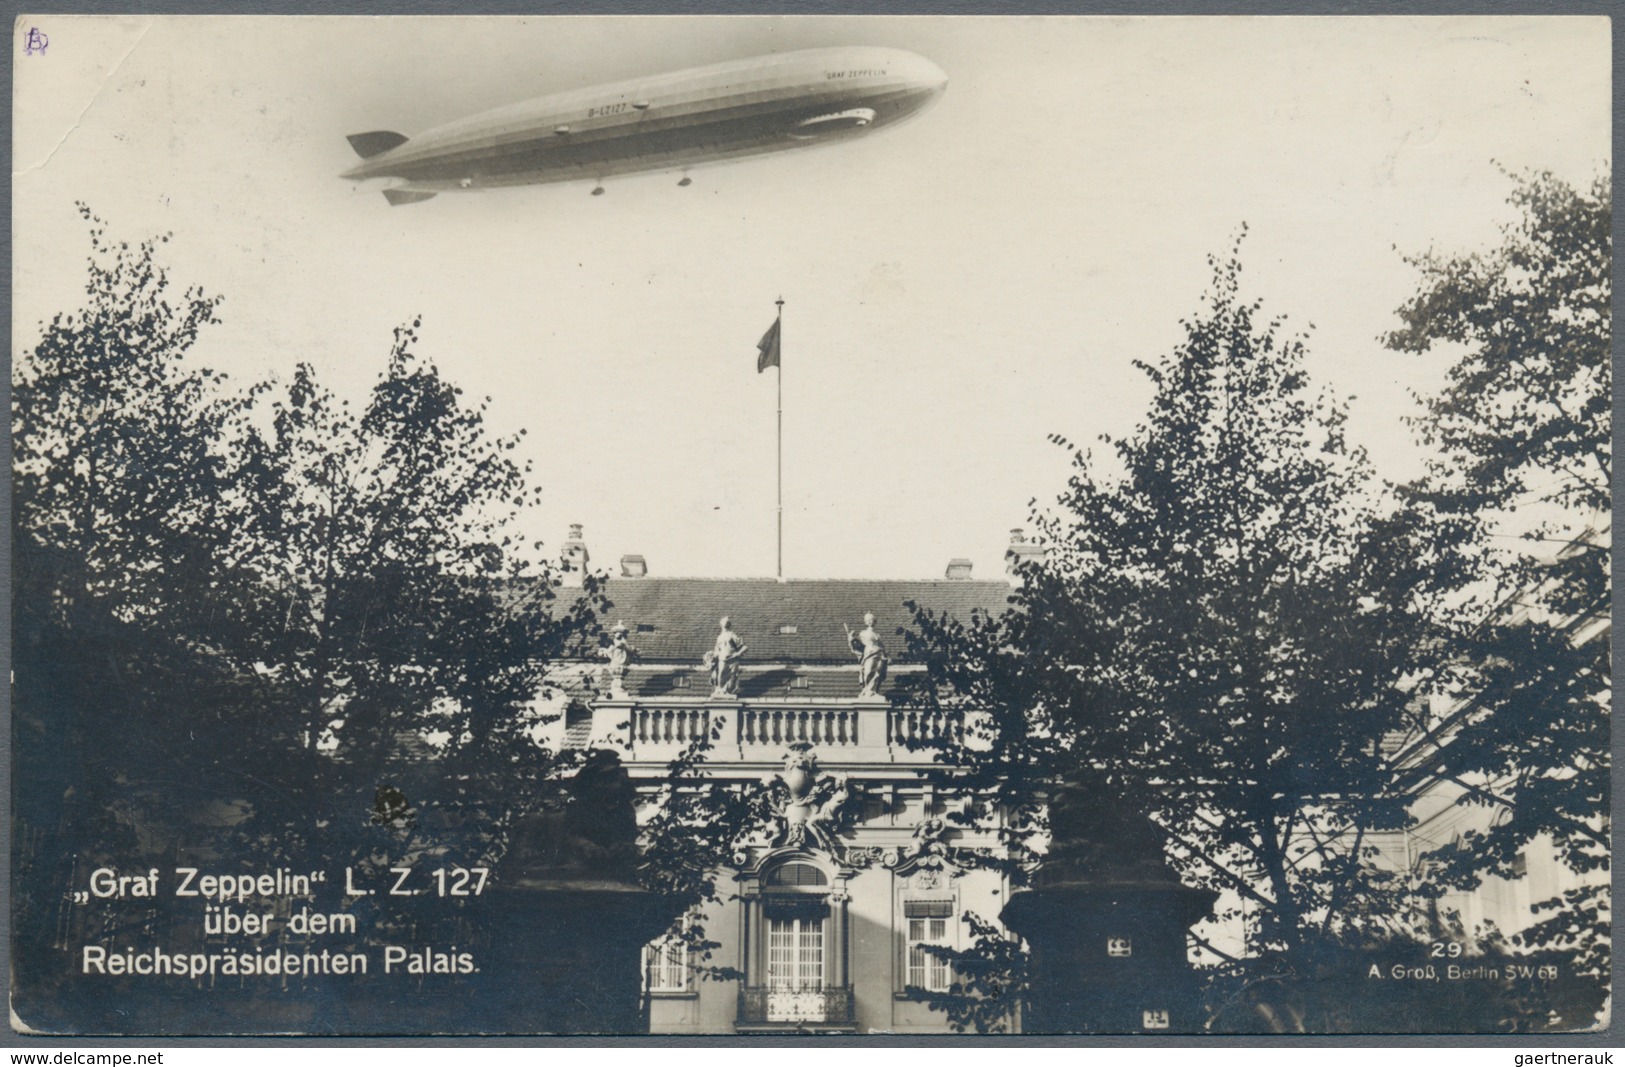 Zeppelinpost Deutschland: 1929. Real Photo Postcard (RPPC) Showing The Graf Zeppelin Airship Flying - Luchtpost & Zeppelin